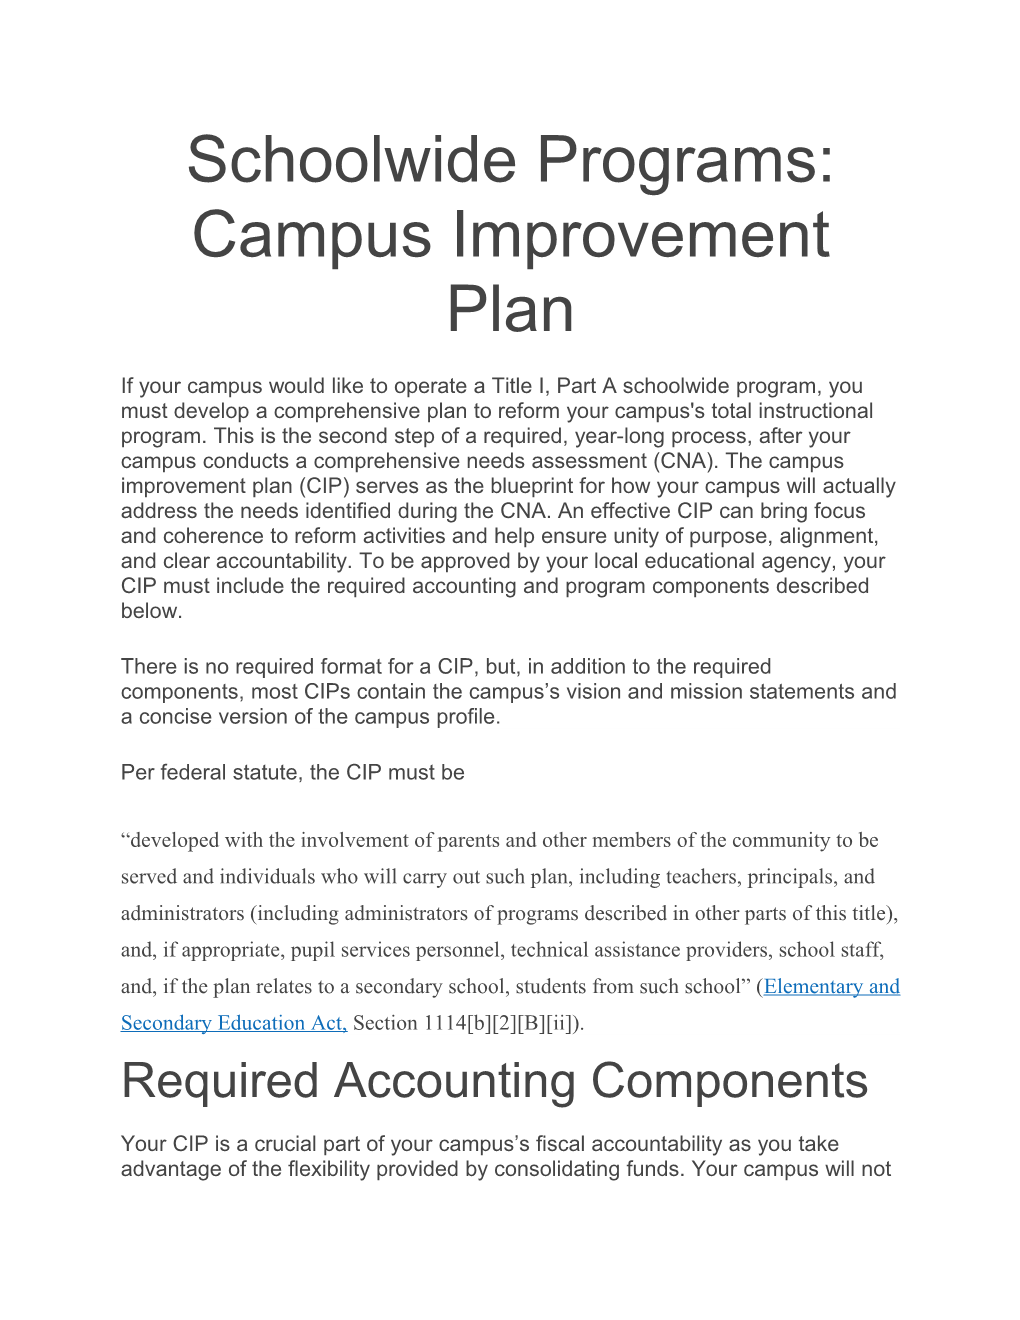 Schoolwide Programs: Campus Improvement Plan